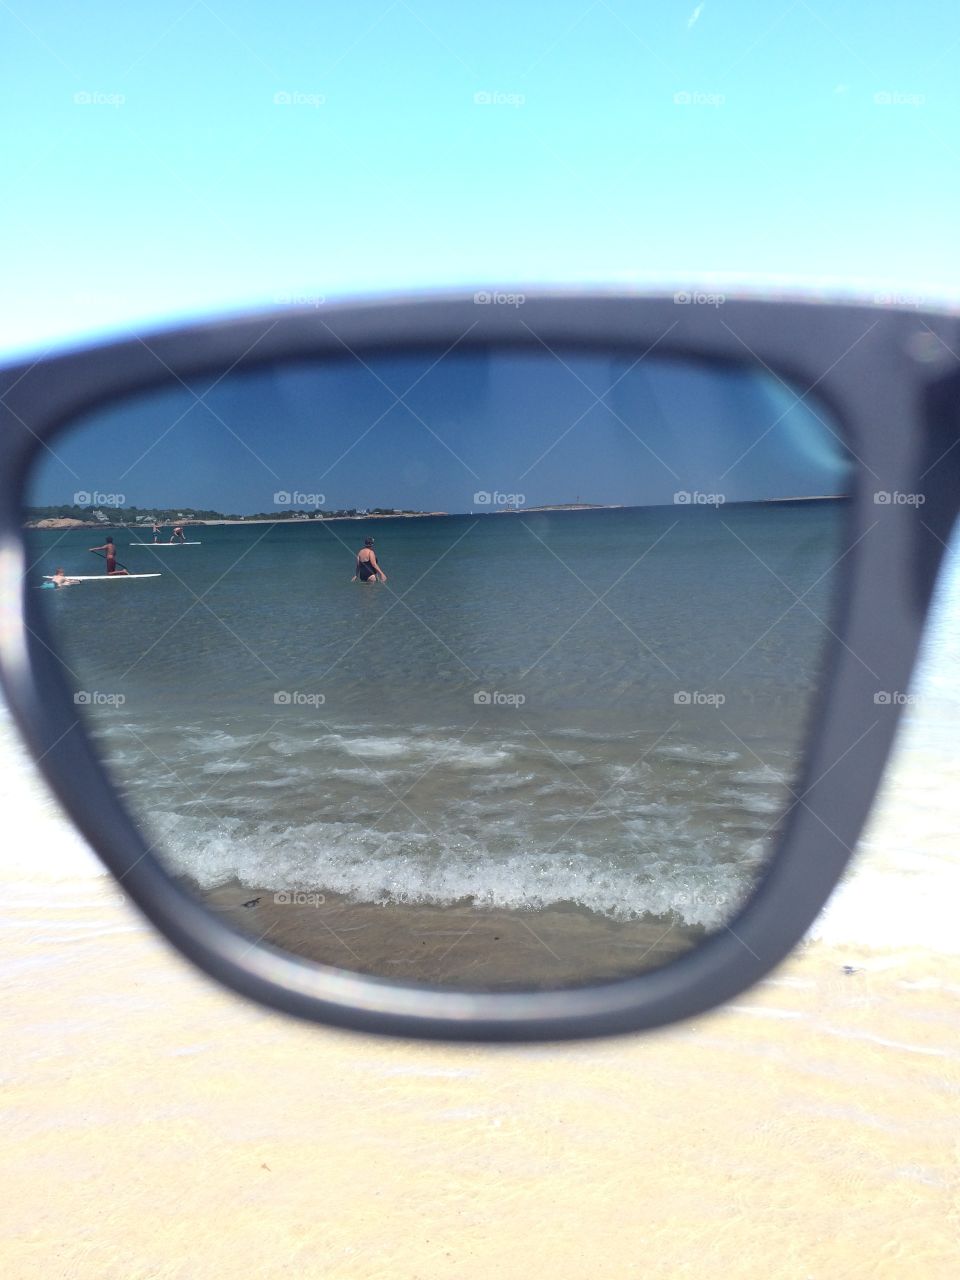 Through sunglasses 